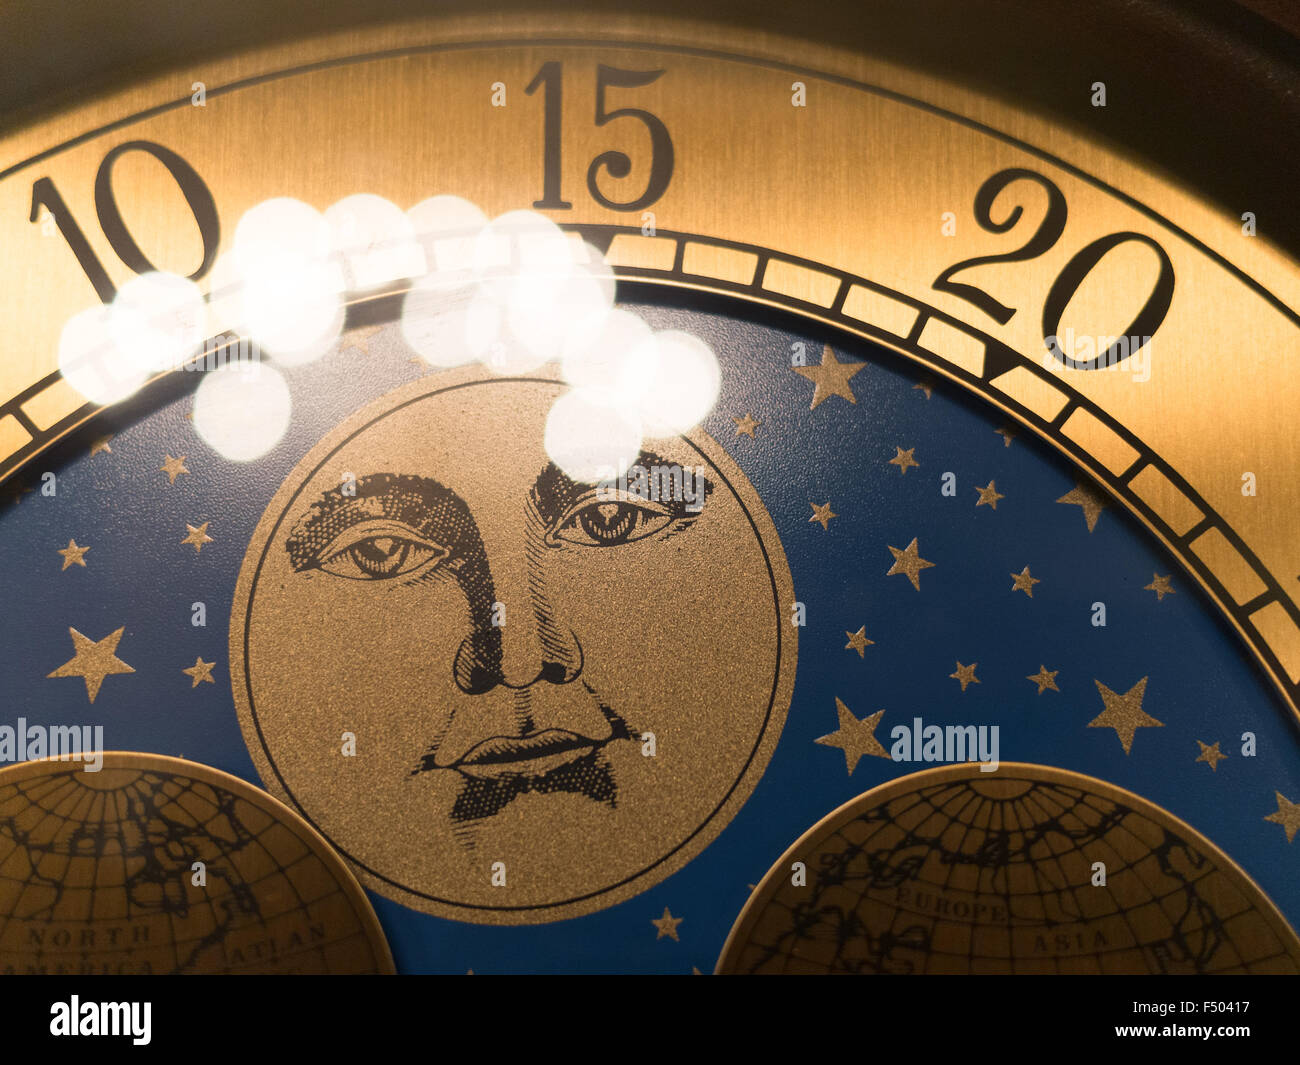 L'homme sur la lune sur une vieille horloge grand-père Banque D'Images